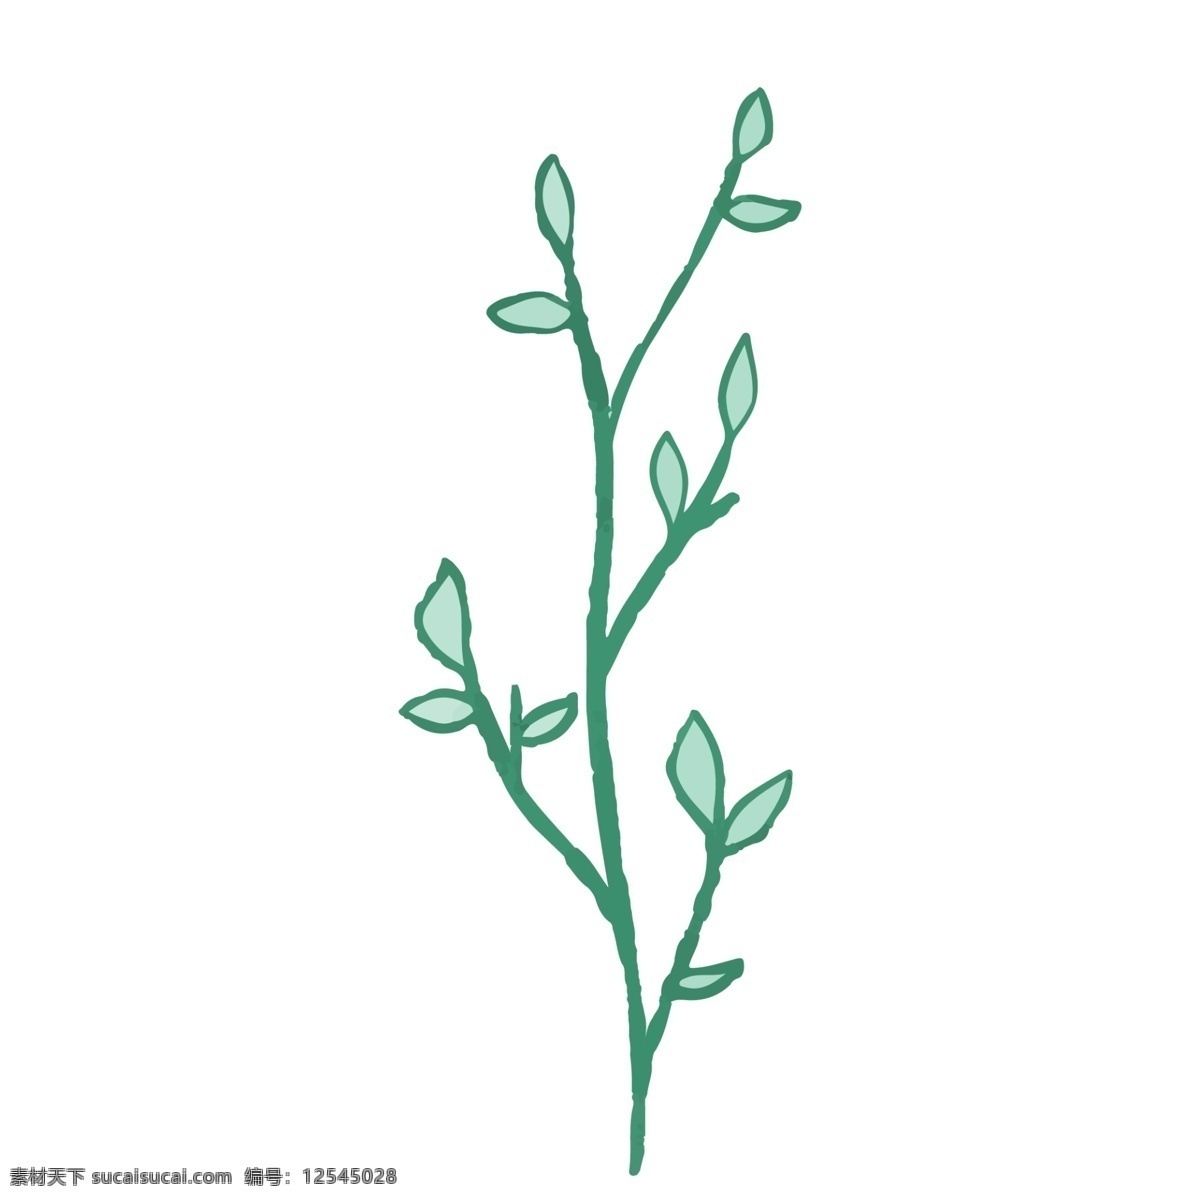 手绘 绿色植物 免 抠 图 卡通绿色植物 漂亮 绿色生态植物 清新空气 绿色的枝叶 免抠图